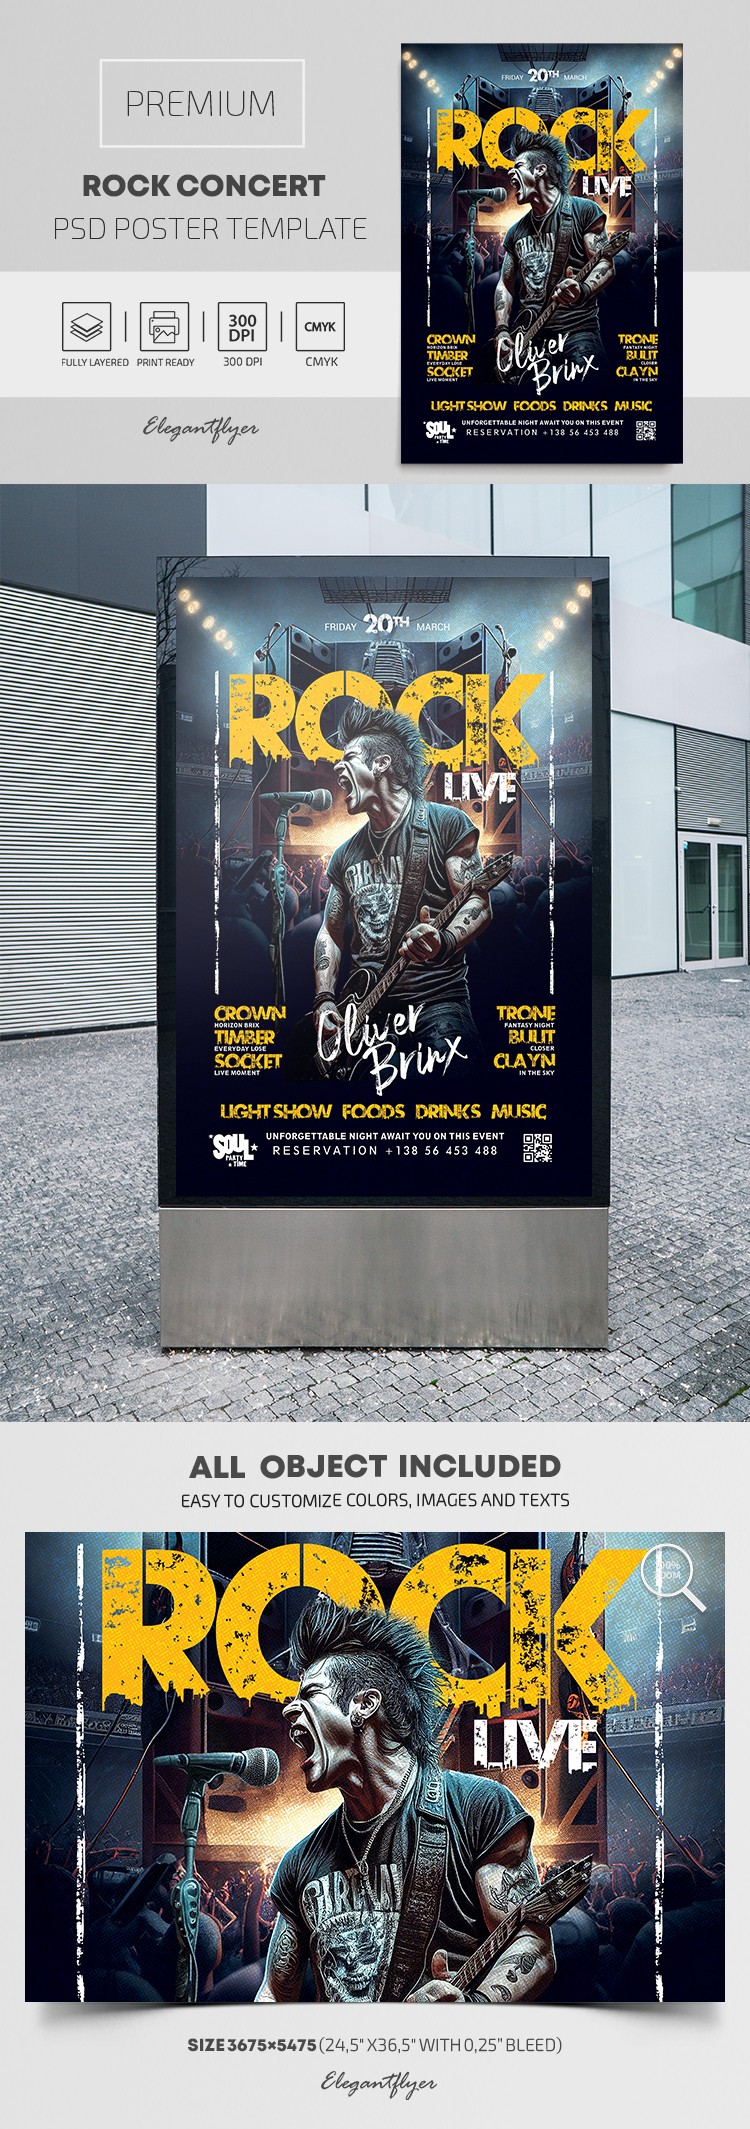 Rock Concert Poster by ElegantFlyer